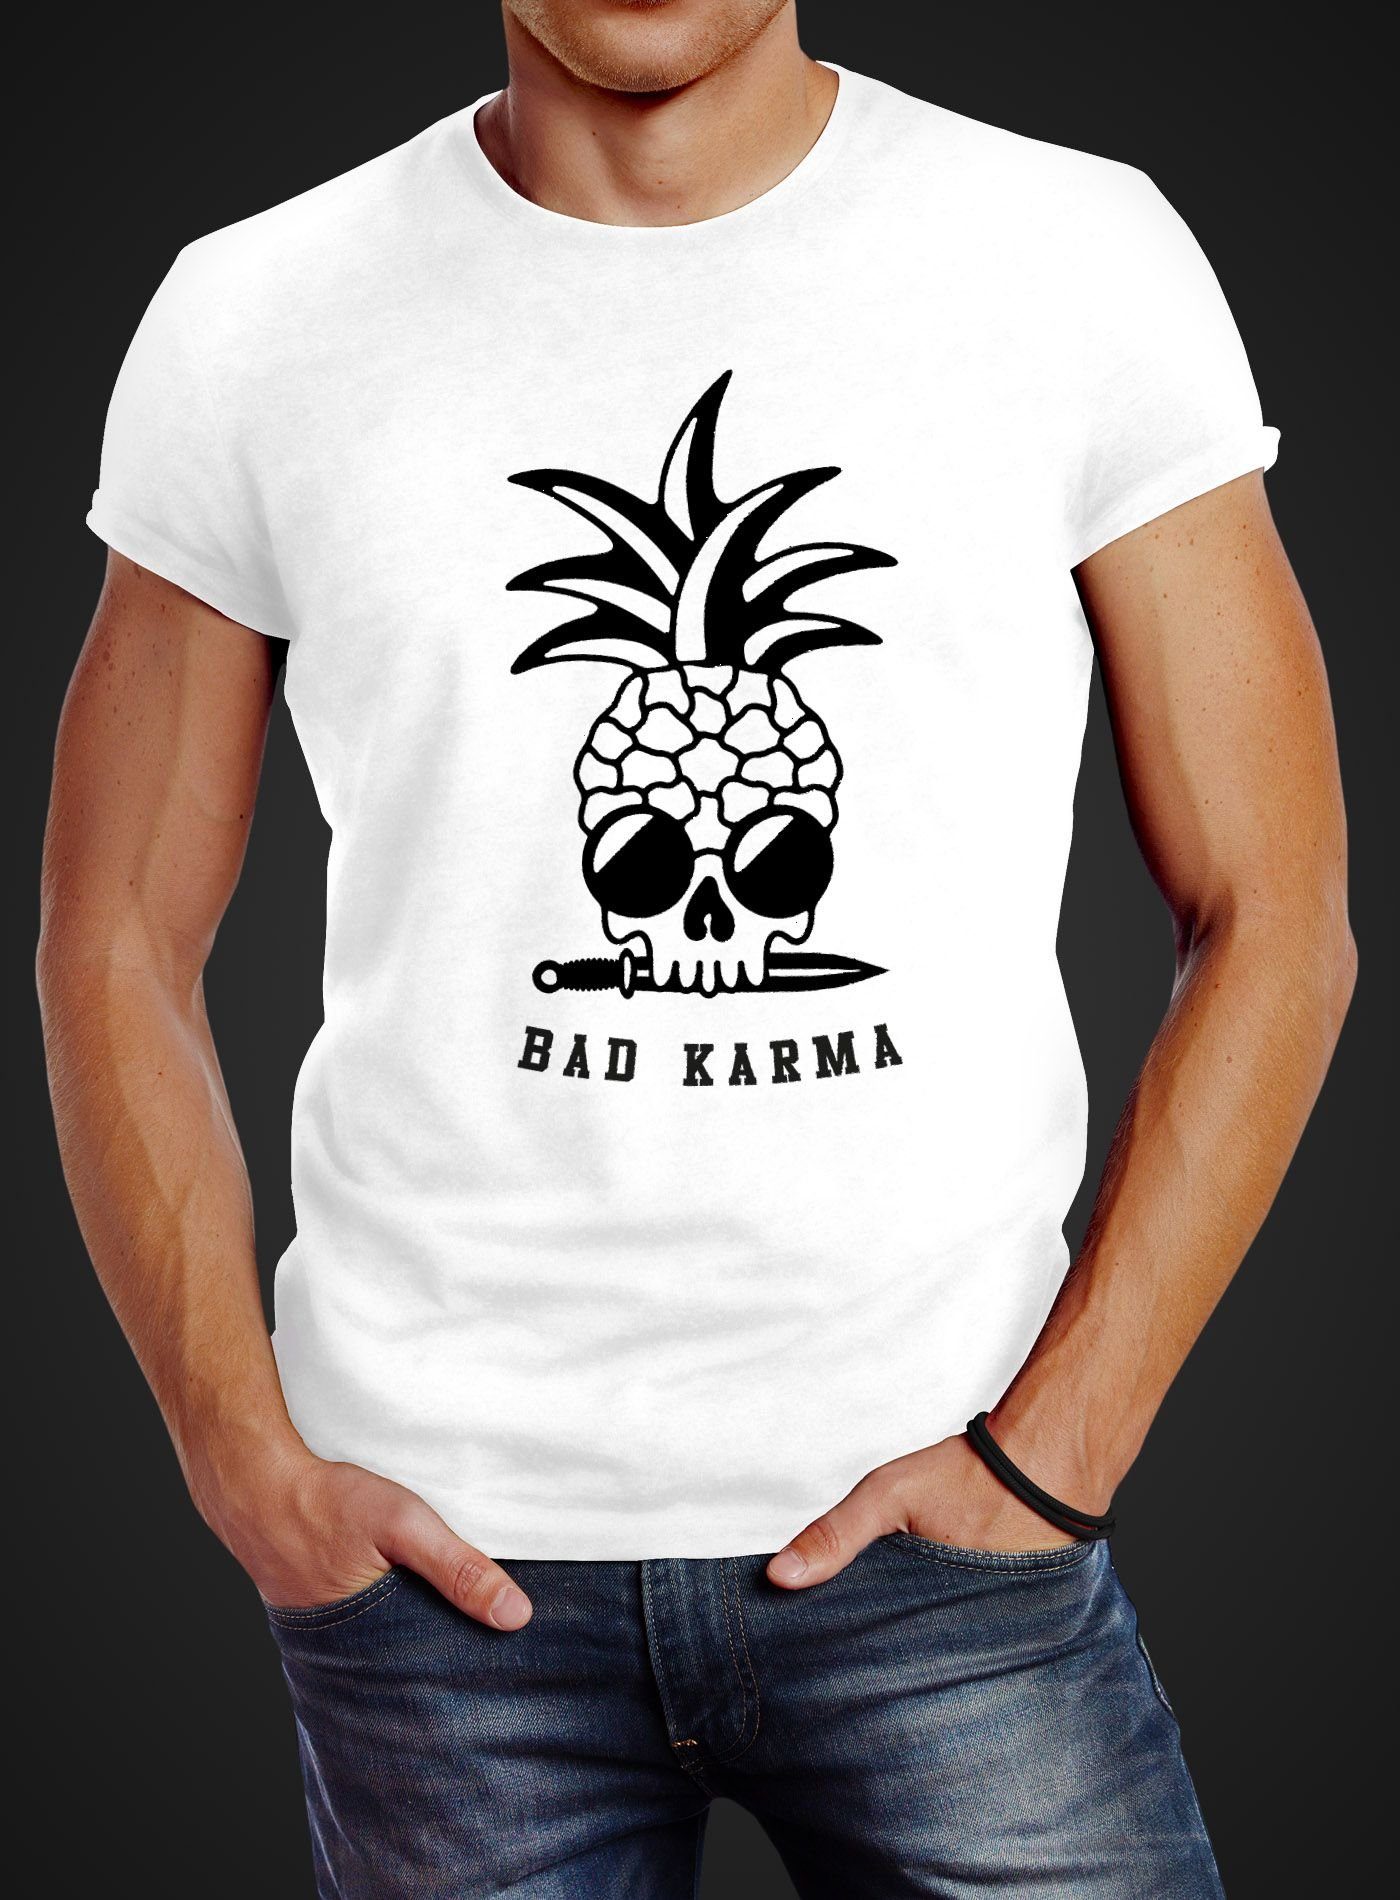 Karma Slim Print Neverless® mit Pineapple Sonnenbrille Fit Print-Shirt T-Shirt Neverless weiß Skull Totenkopf Herren Ananas Bad